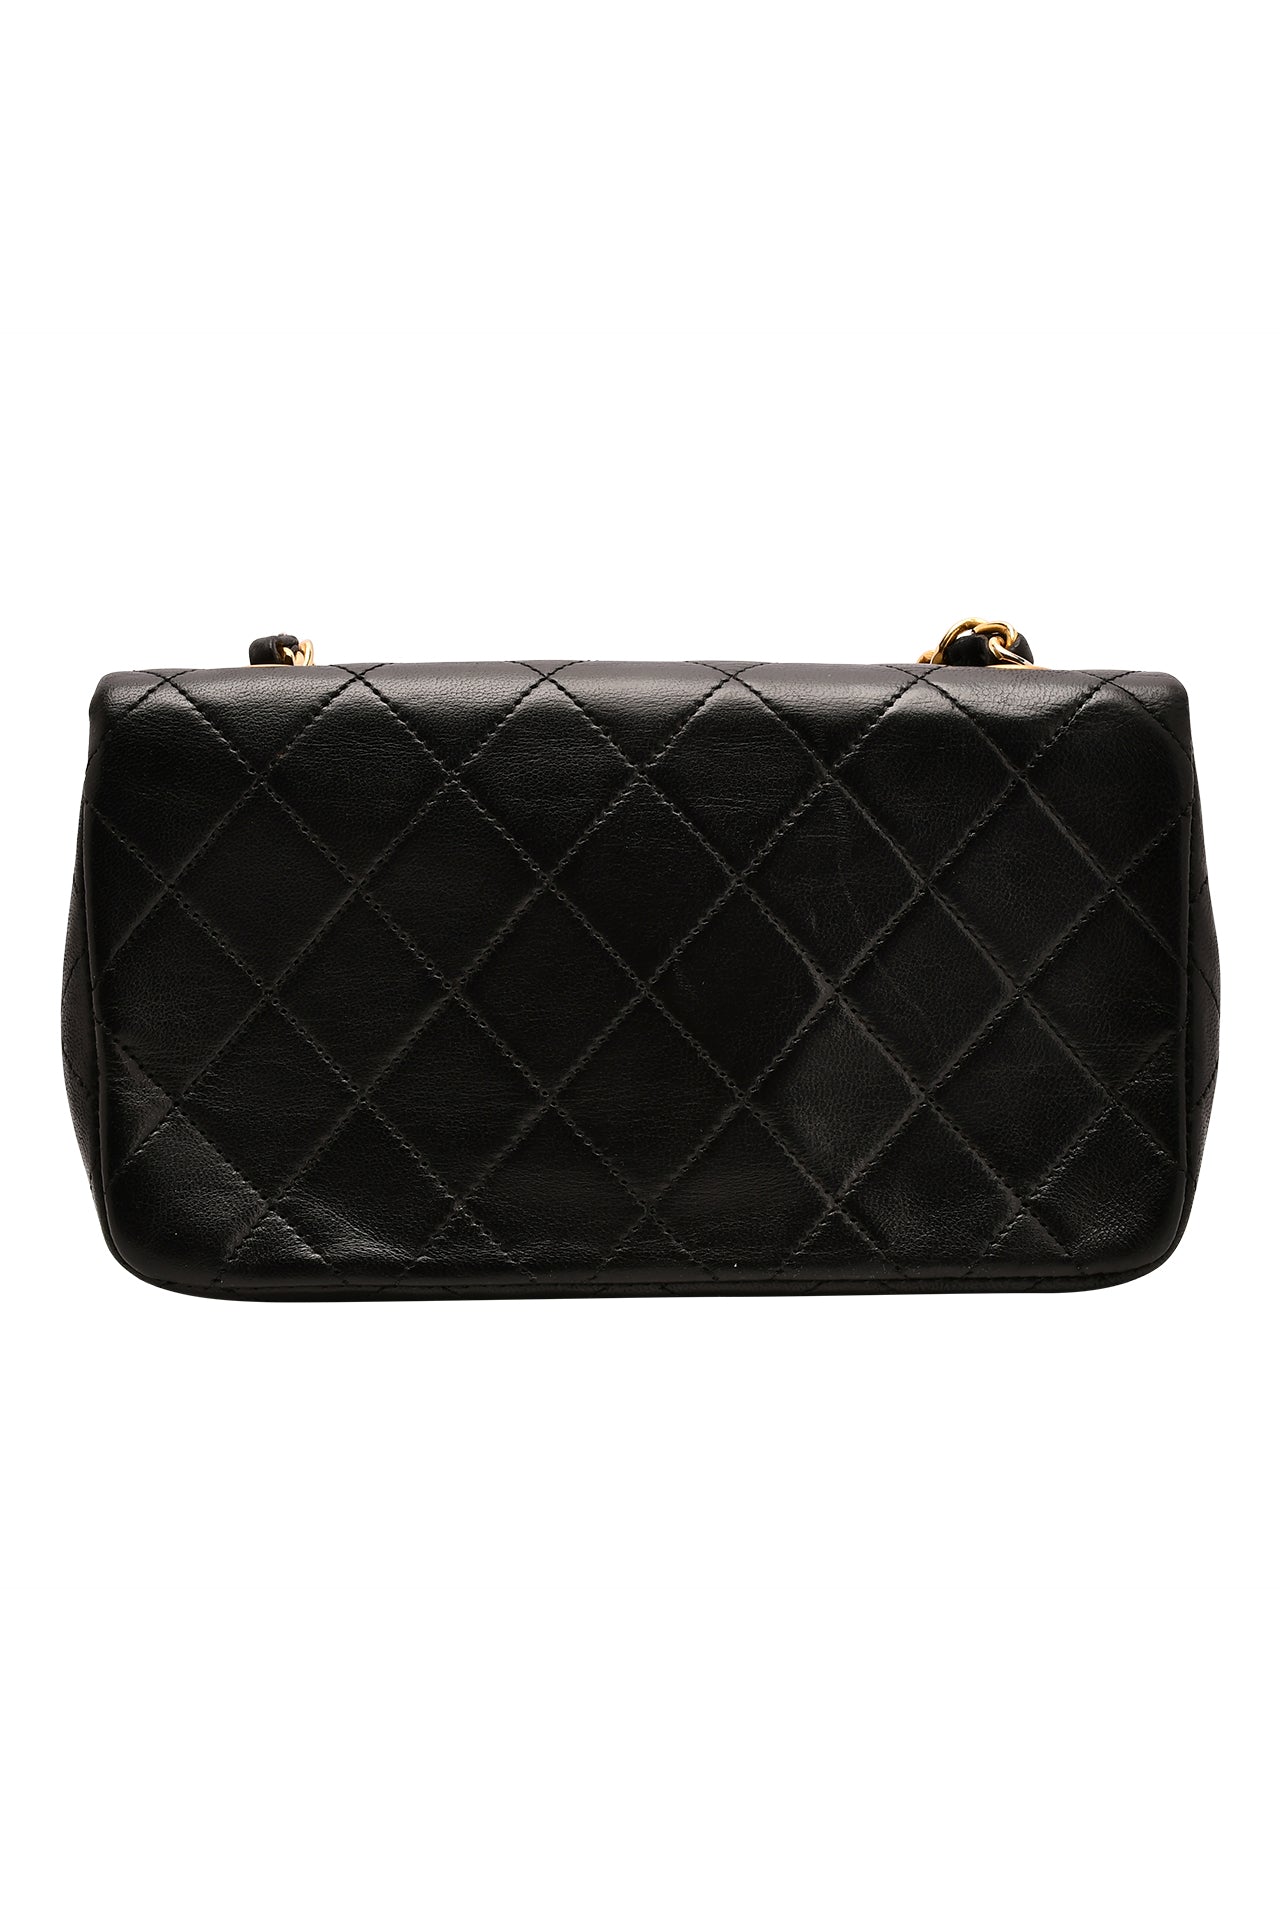 Chanel Black Leather Shoulder Flap Bag